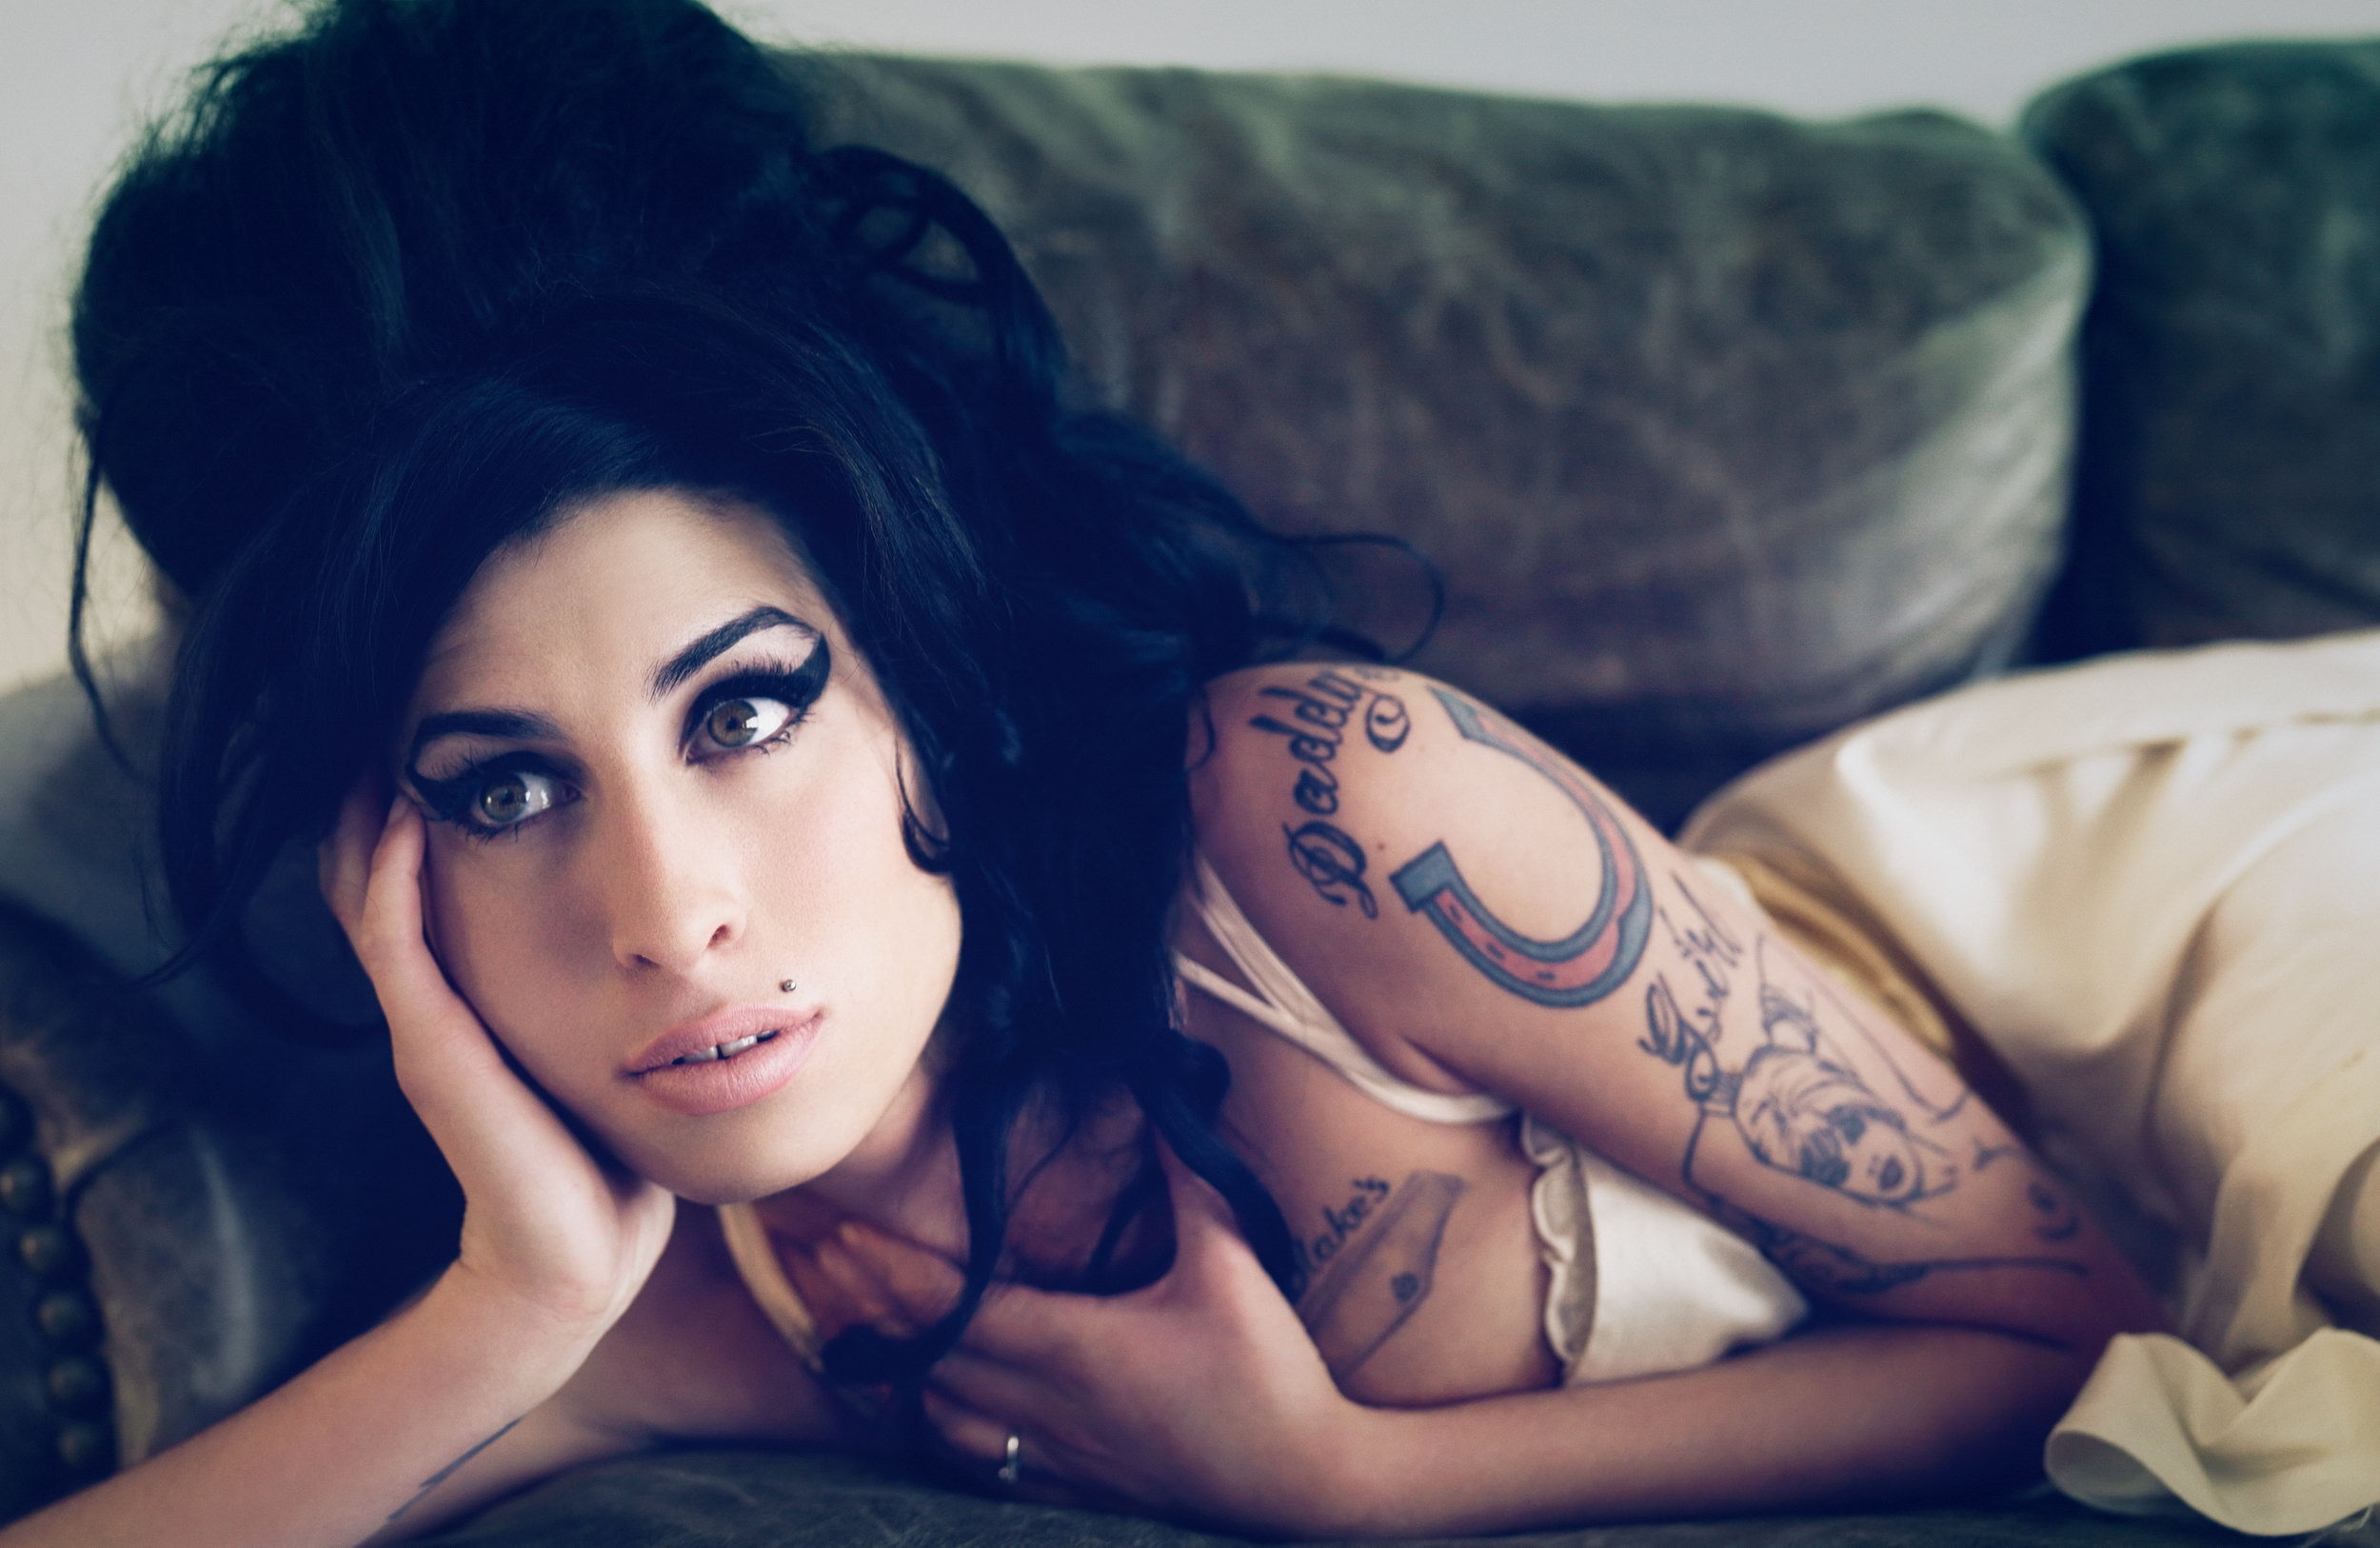 Melhores papéis de parede de Amy Winehouse para tela do telefone